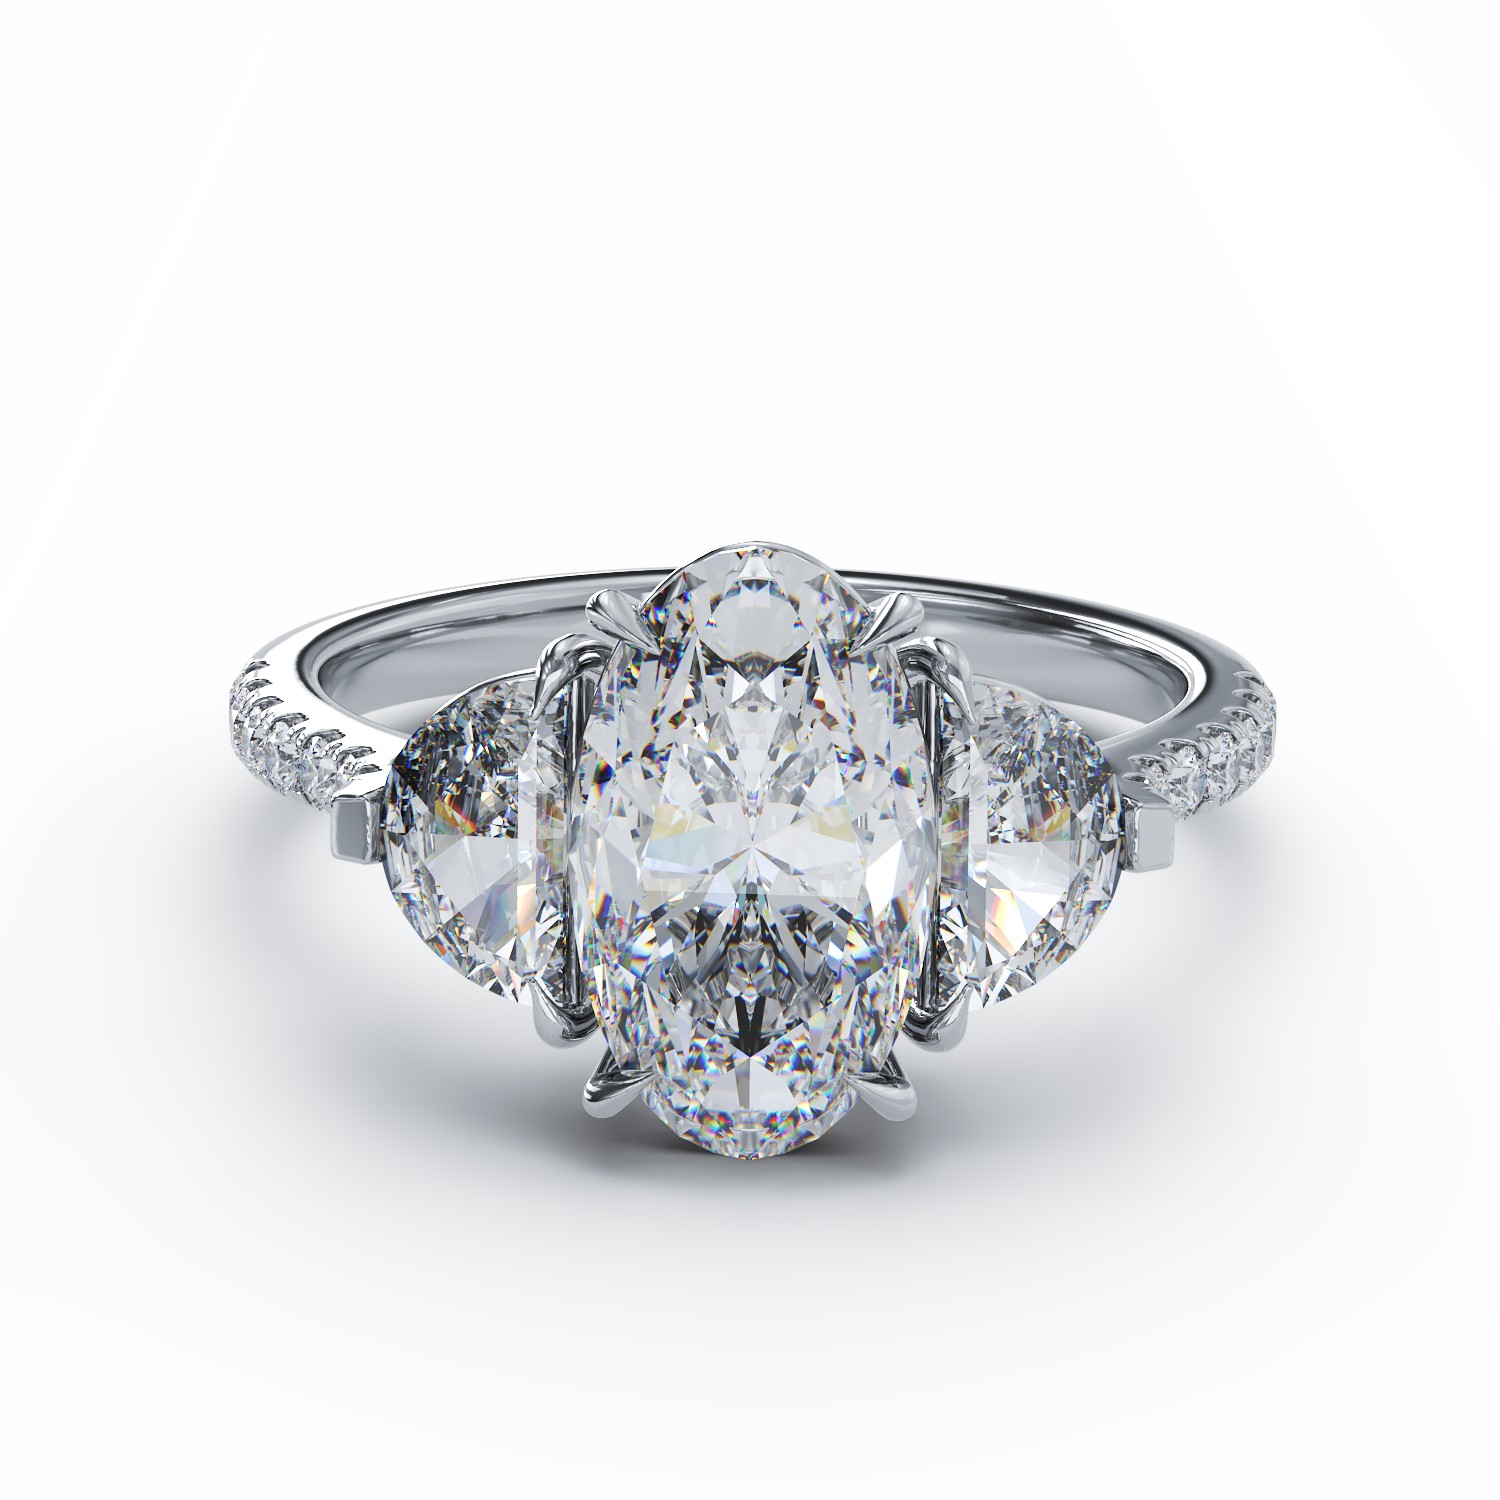 18K fehérarany gyűrű 2ct gyémánttal és 0.99ct gyémántokkal